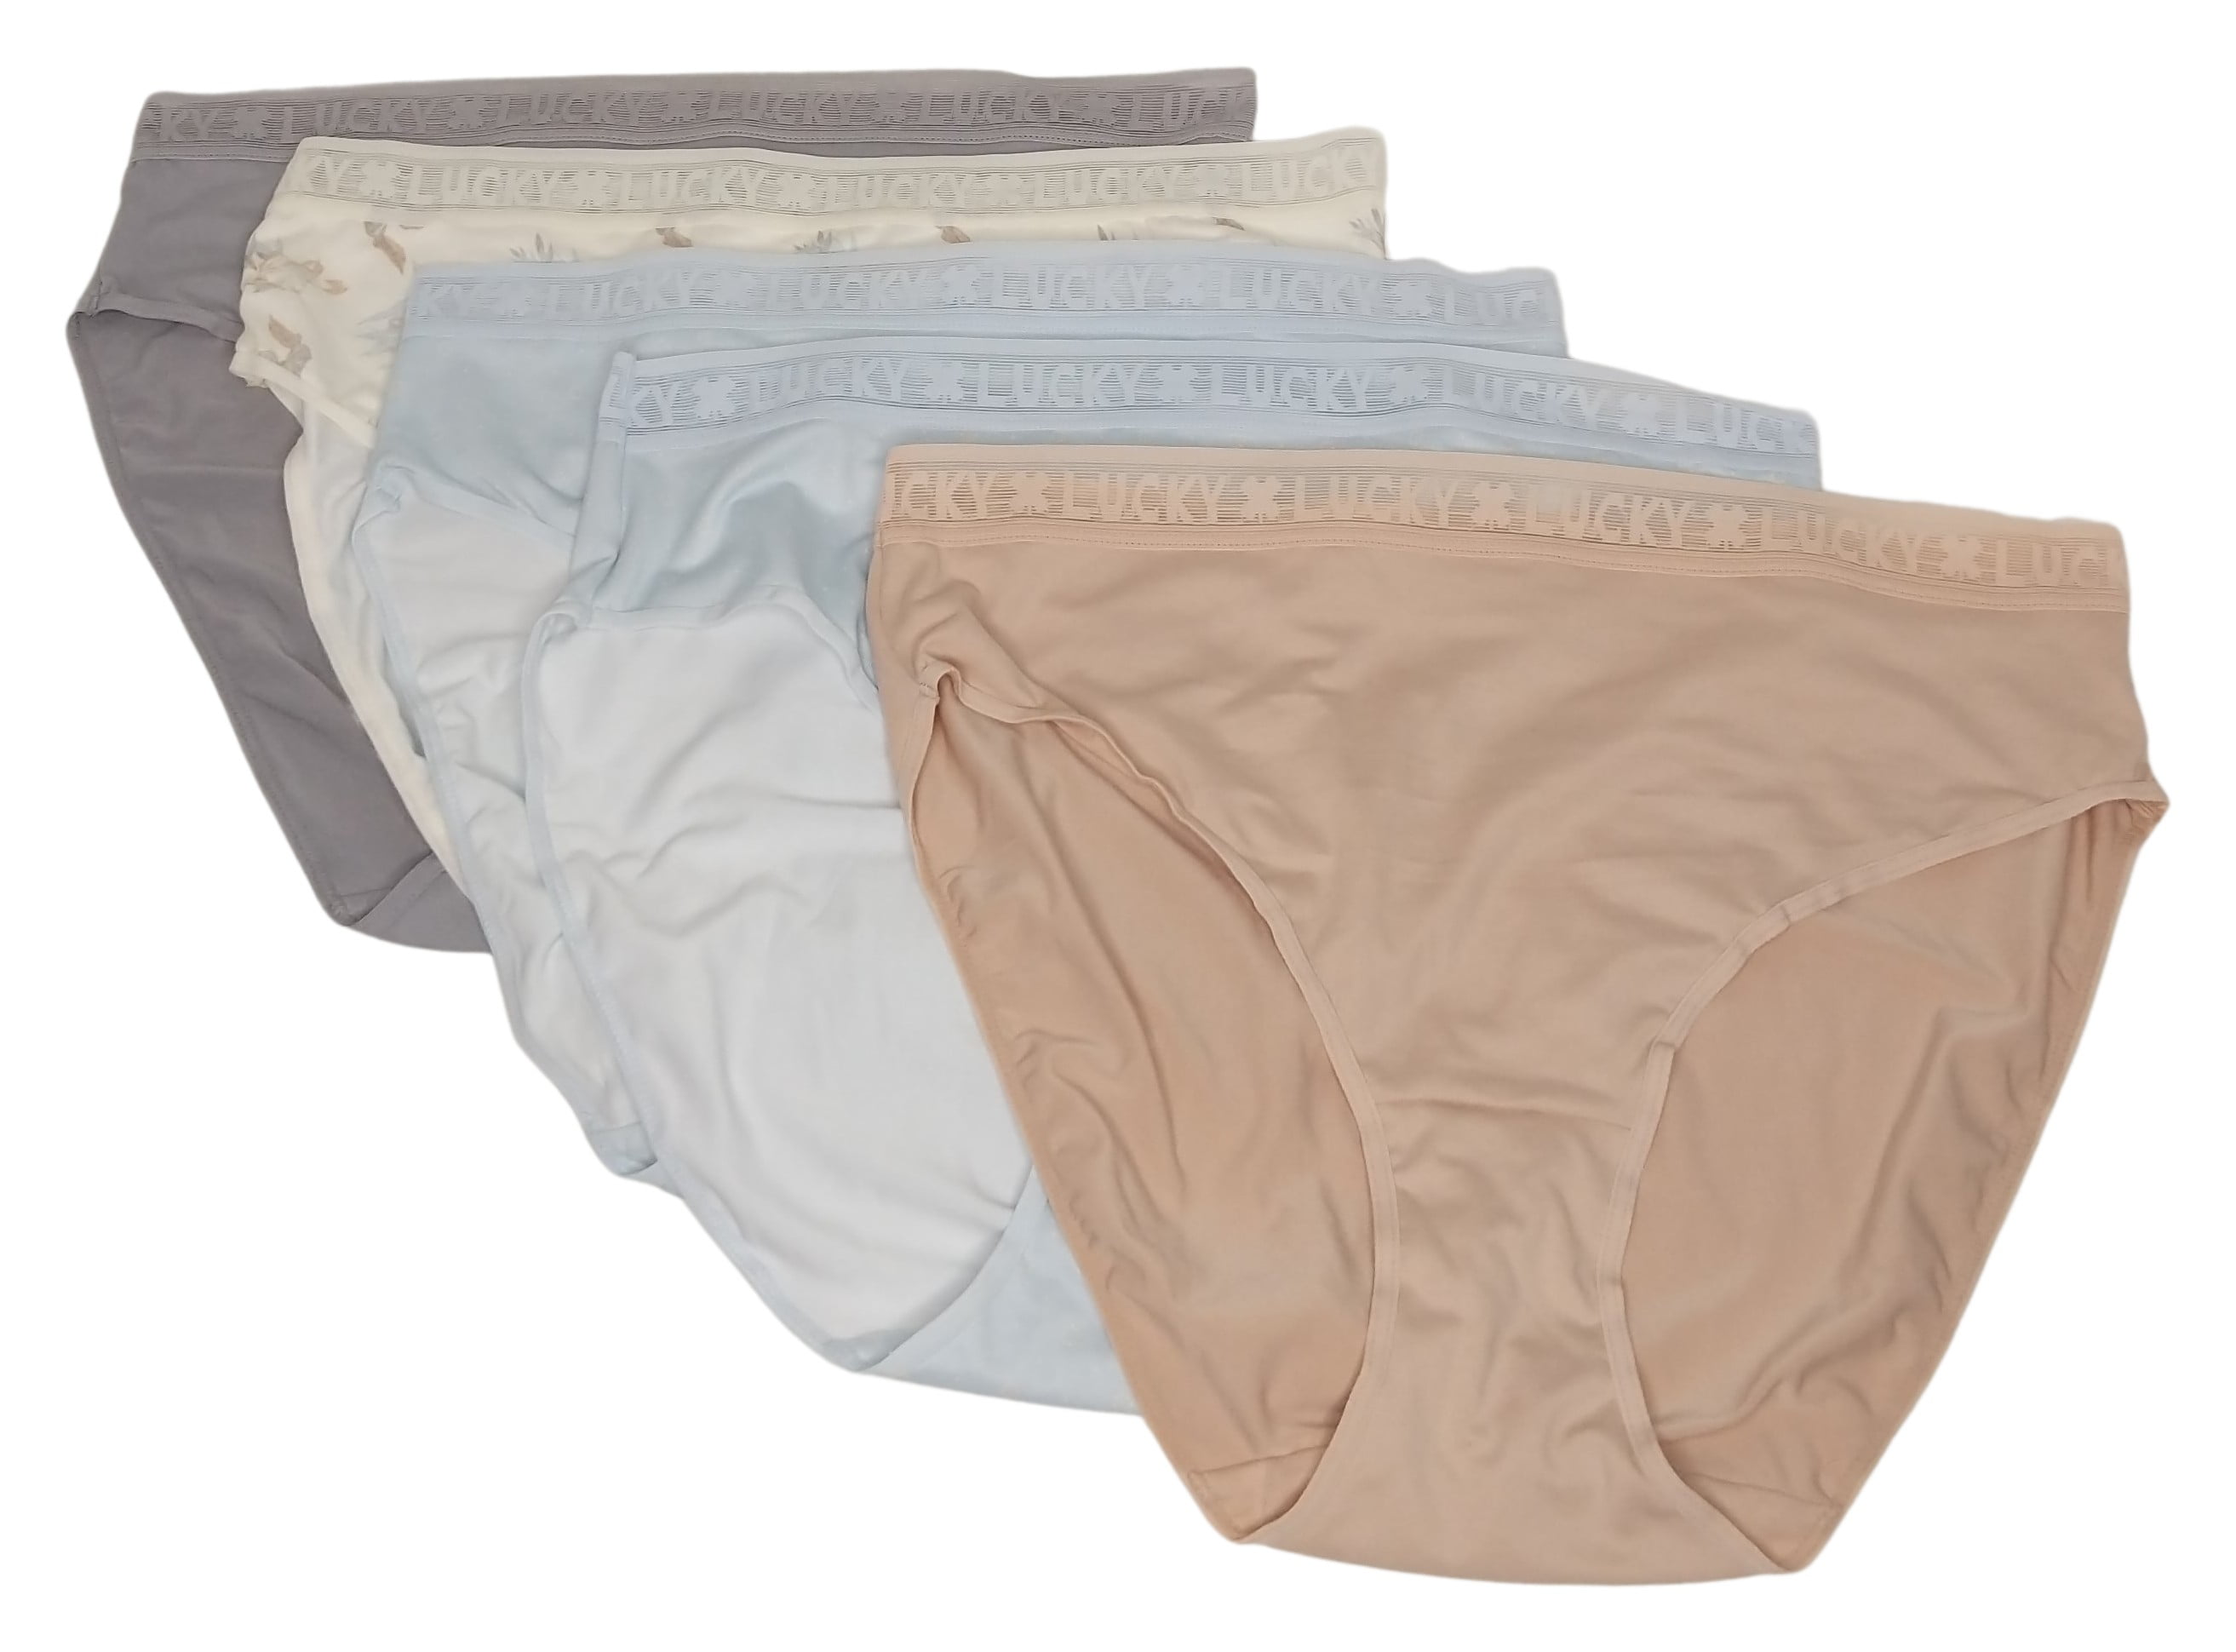 Lucky Brand Women's Underwear Panties Hi Cut 5 Pack Pinks Ultra